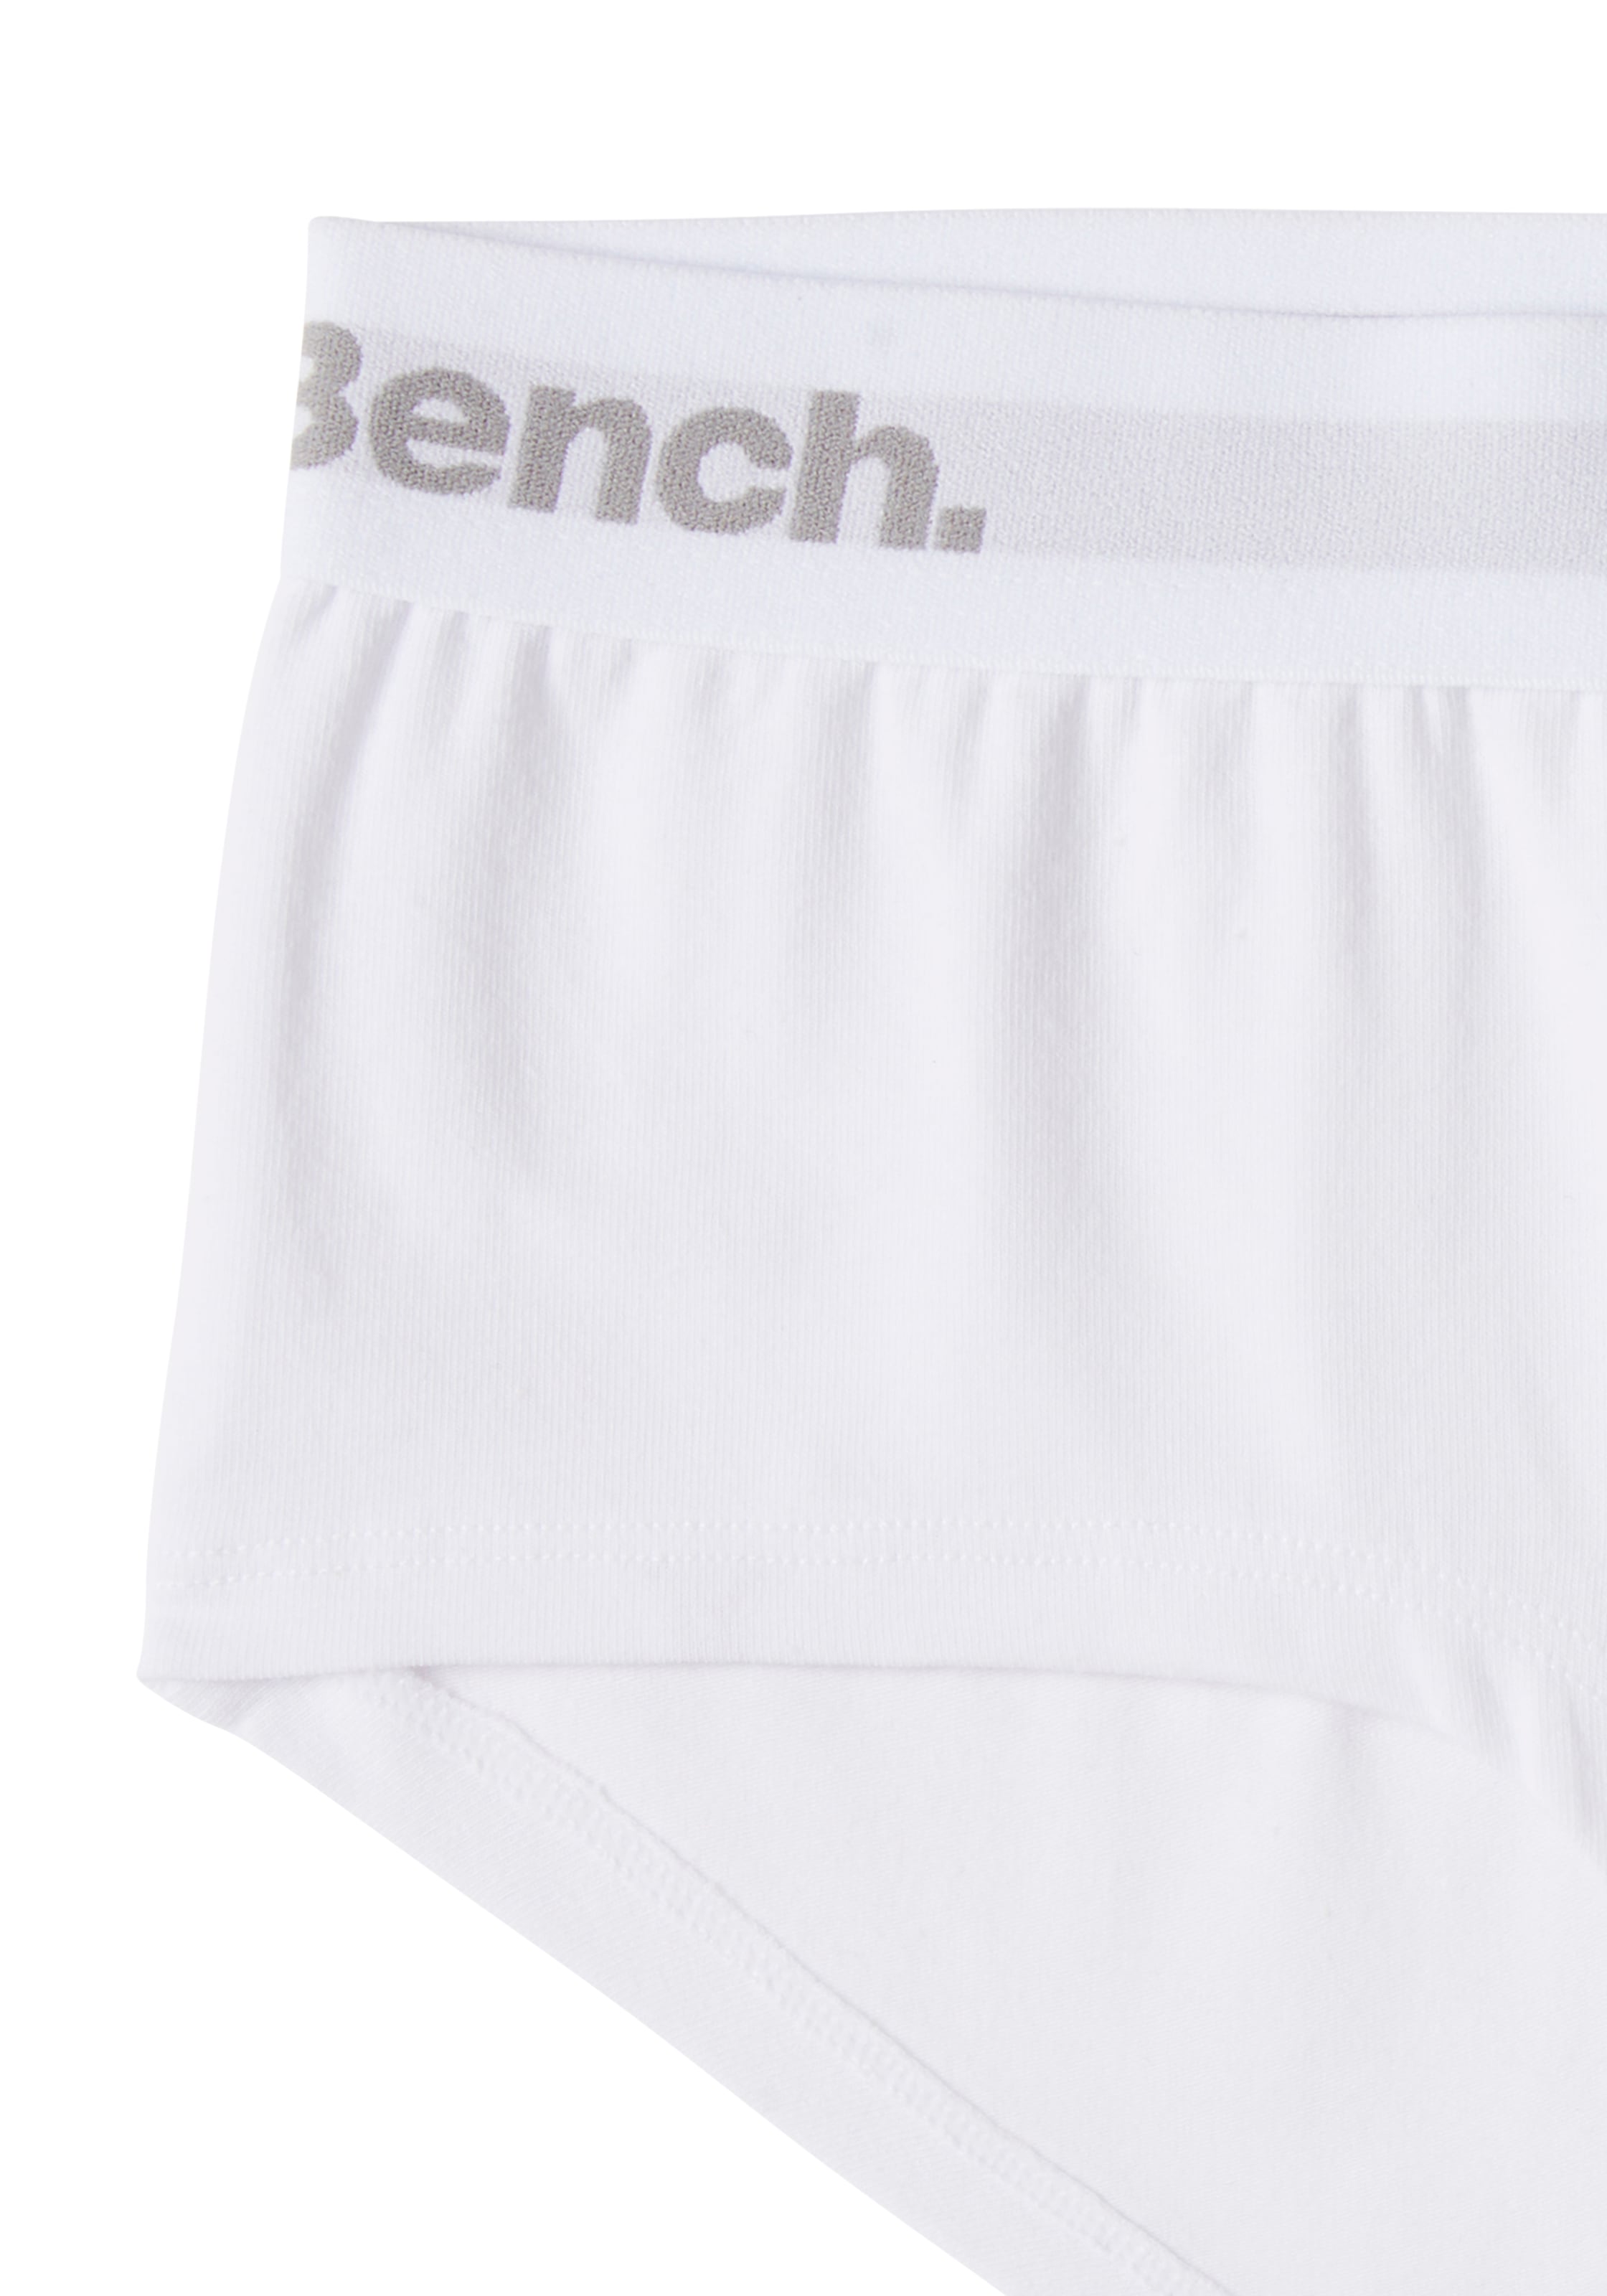 Bench. Panty, (Packung, 3 St.), mit Logo-Webbund kaufen | BAUR